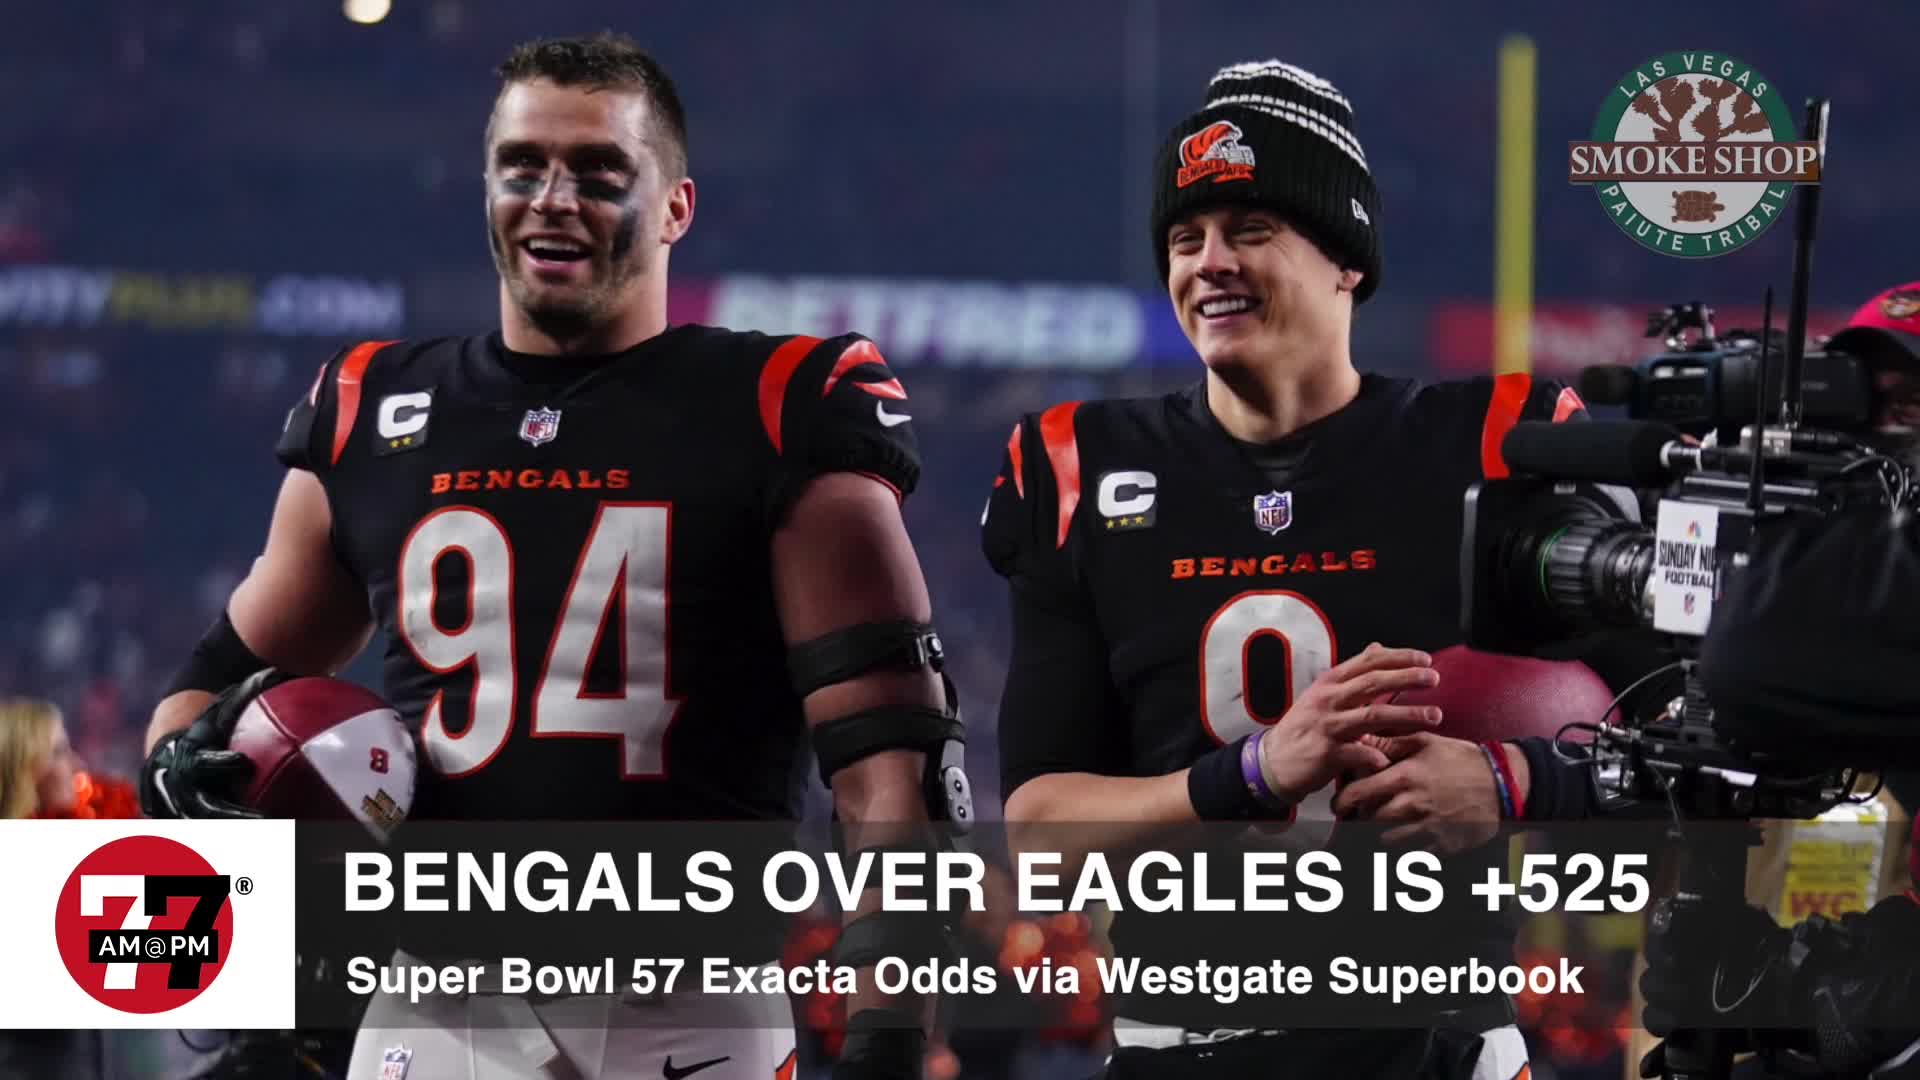 Super Bowl 57 Exacta odds